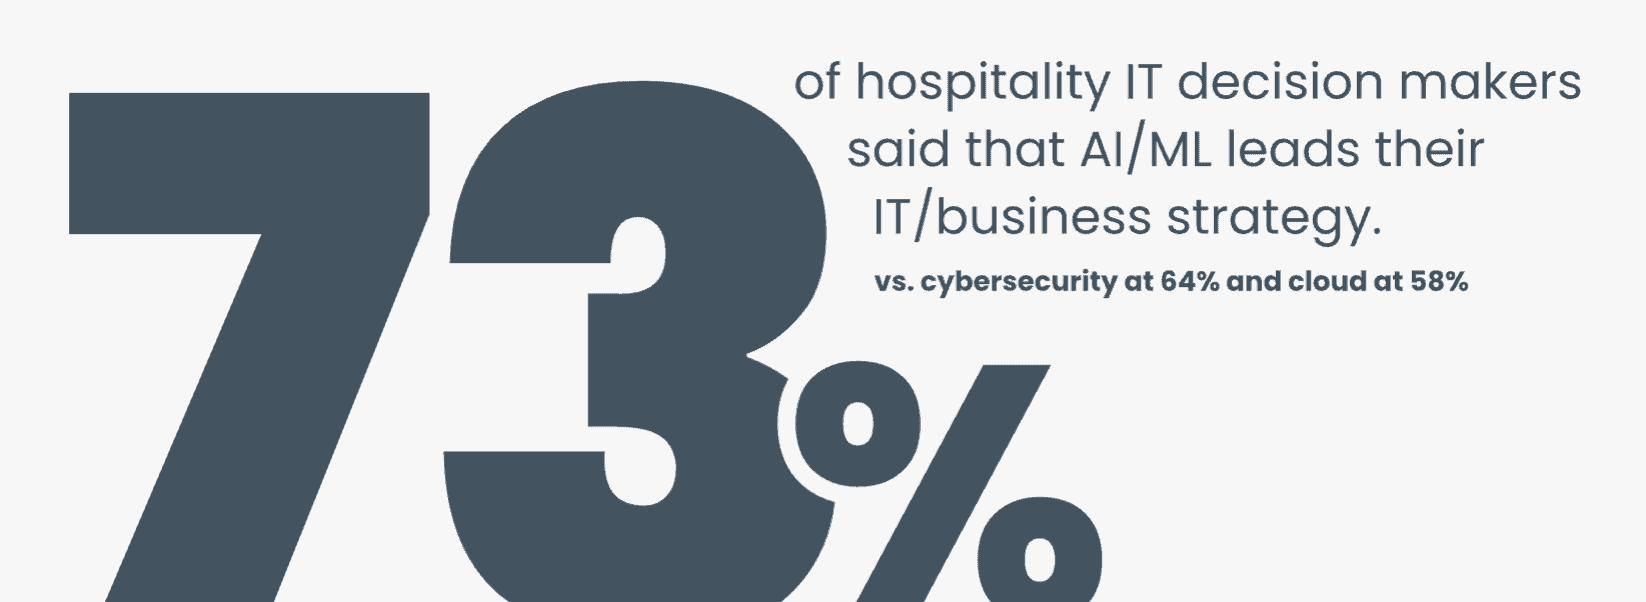 AI leads hospitality business strategy, said 73% of hospitality CTOs